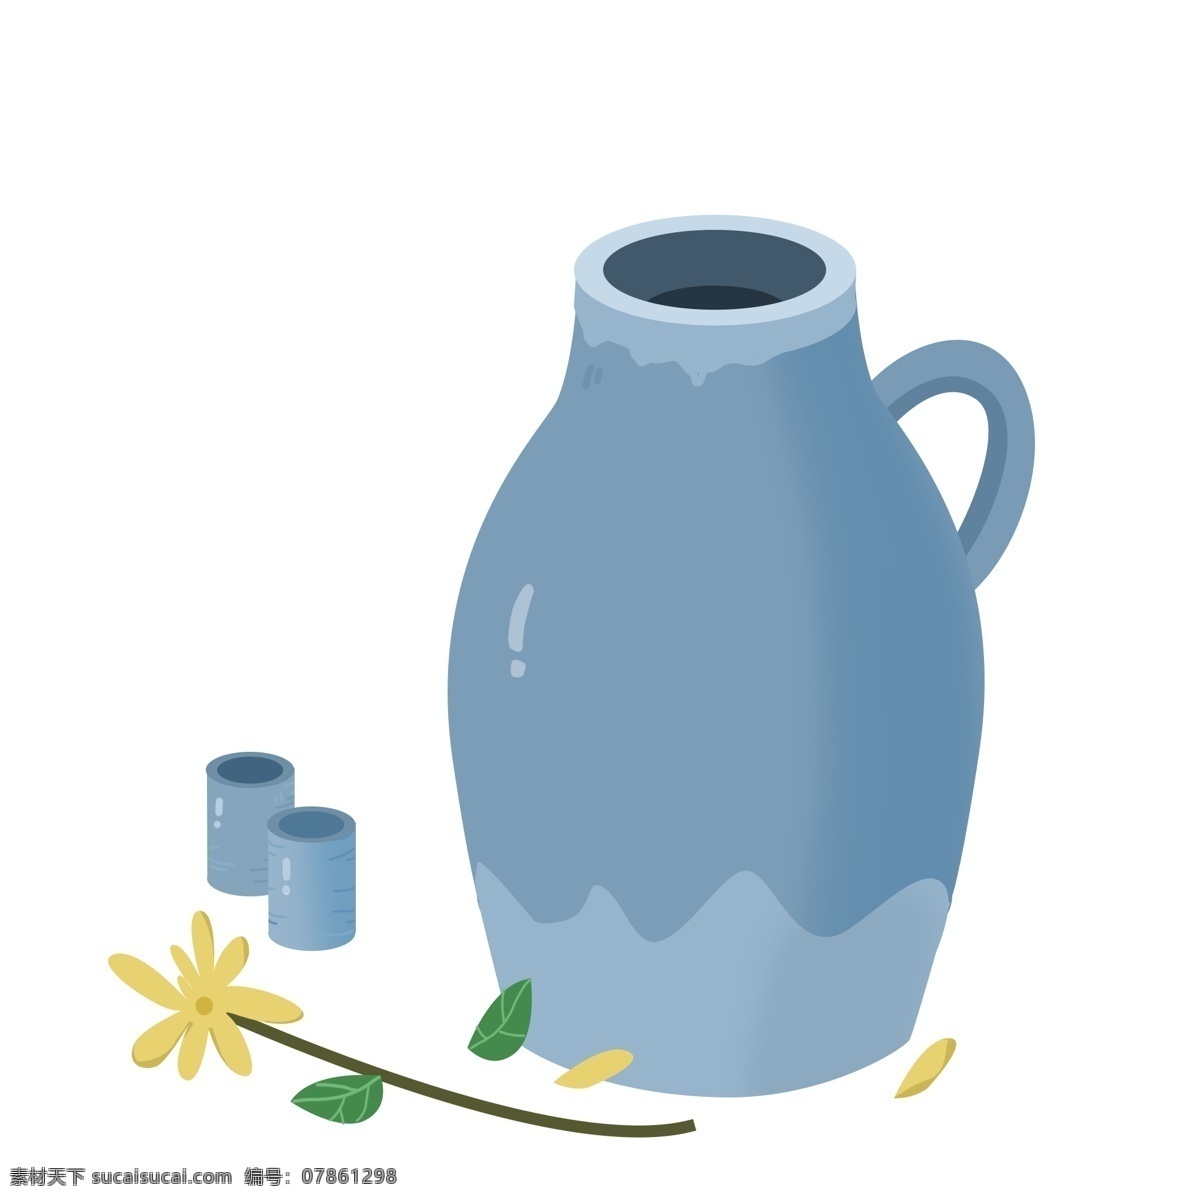 办公用品 茶杯 插画 蓝色的茶杯 卡通插画 上班用品 文员用品 工作用品 黄色的花朵